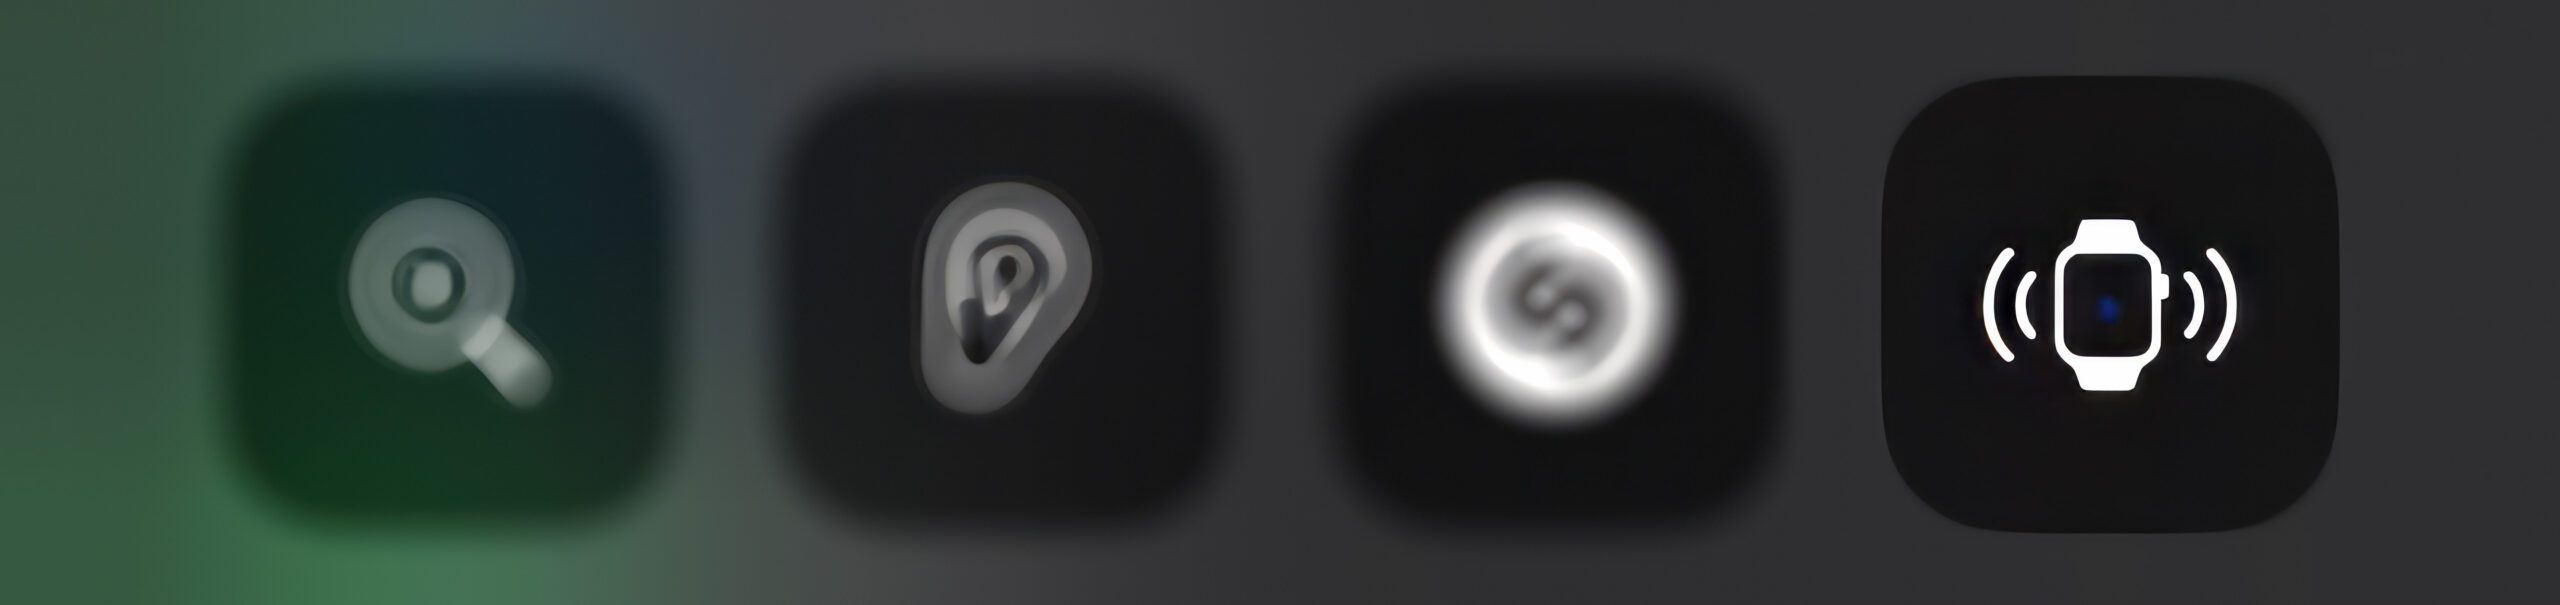 Rechts unten sieht man das neue Icon für die Funktion, um die Apple Watch anzupingen – hier ein Screenshots aus meinem iPhone-Kontrollzentrum (mit Weichzeichner über die anderen Buttons).